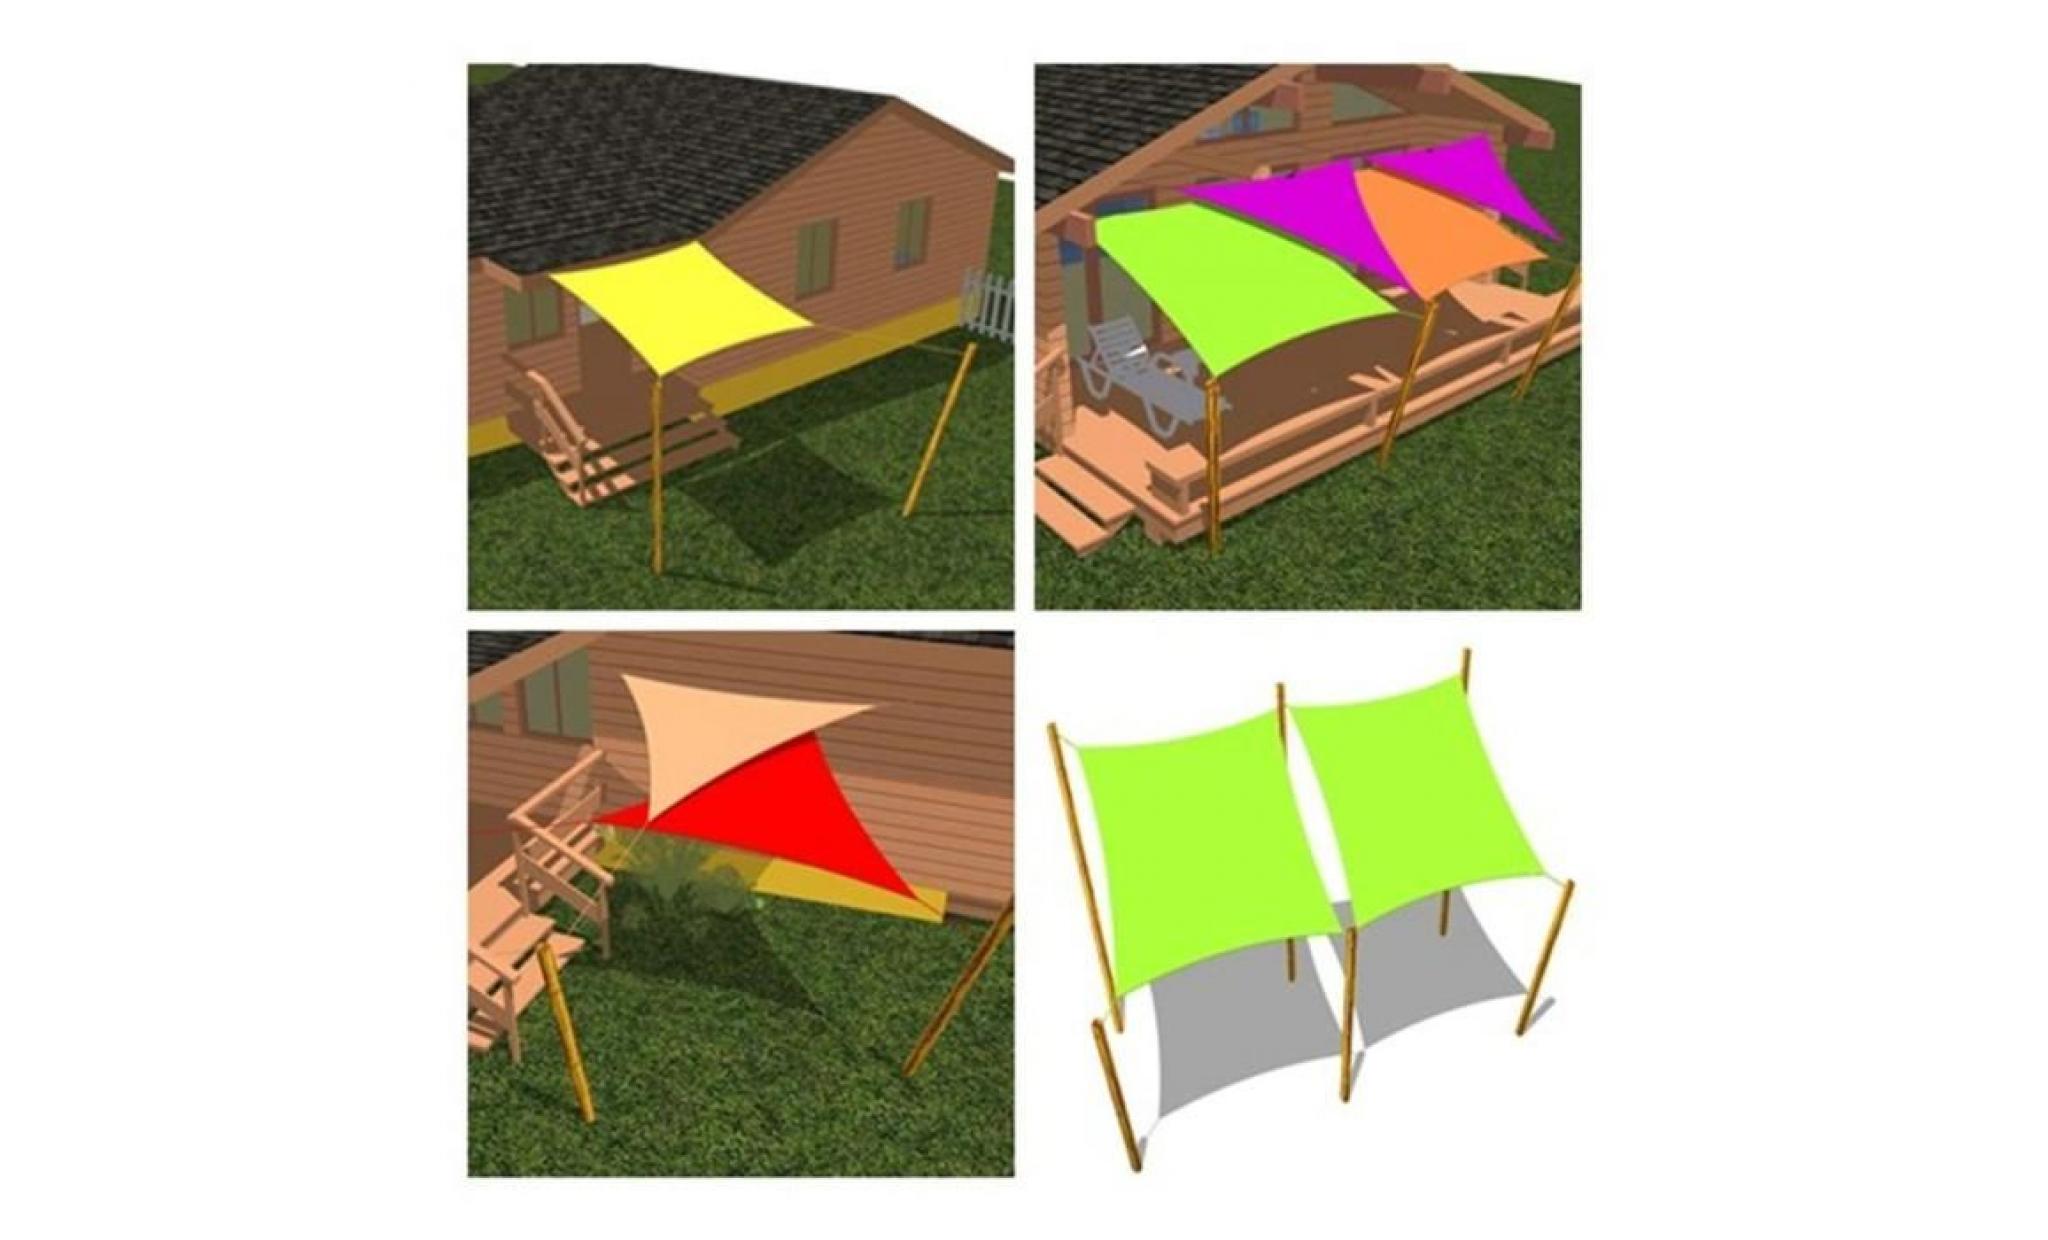 voile d'ombrage cool area   toile solaire triangulaire 3.6 x 3.6 x 3.6m   résistante et respirante   couleur vert pas cher